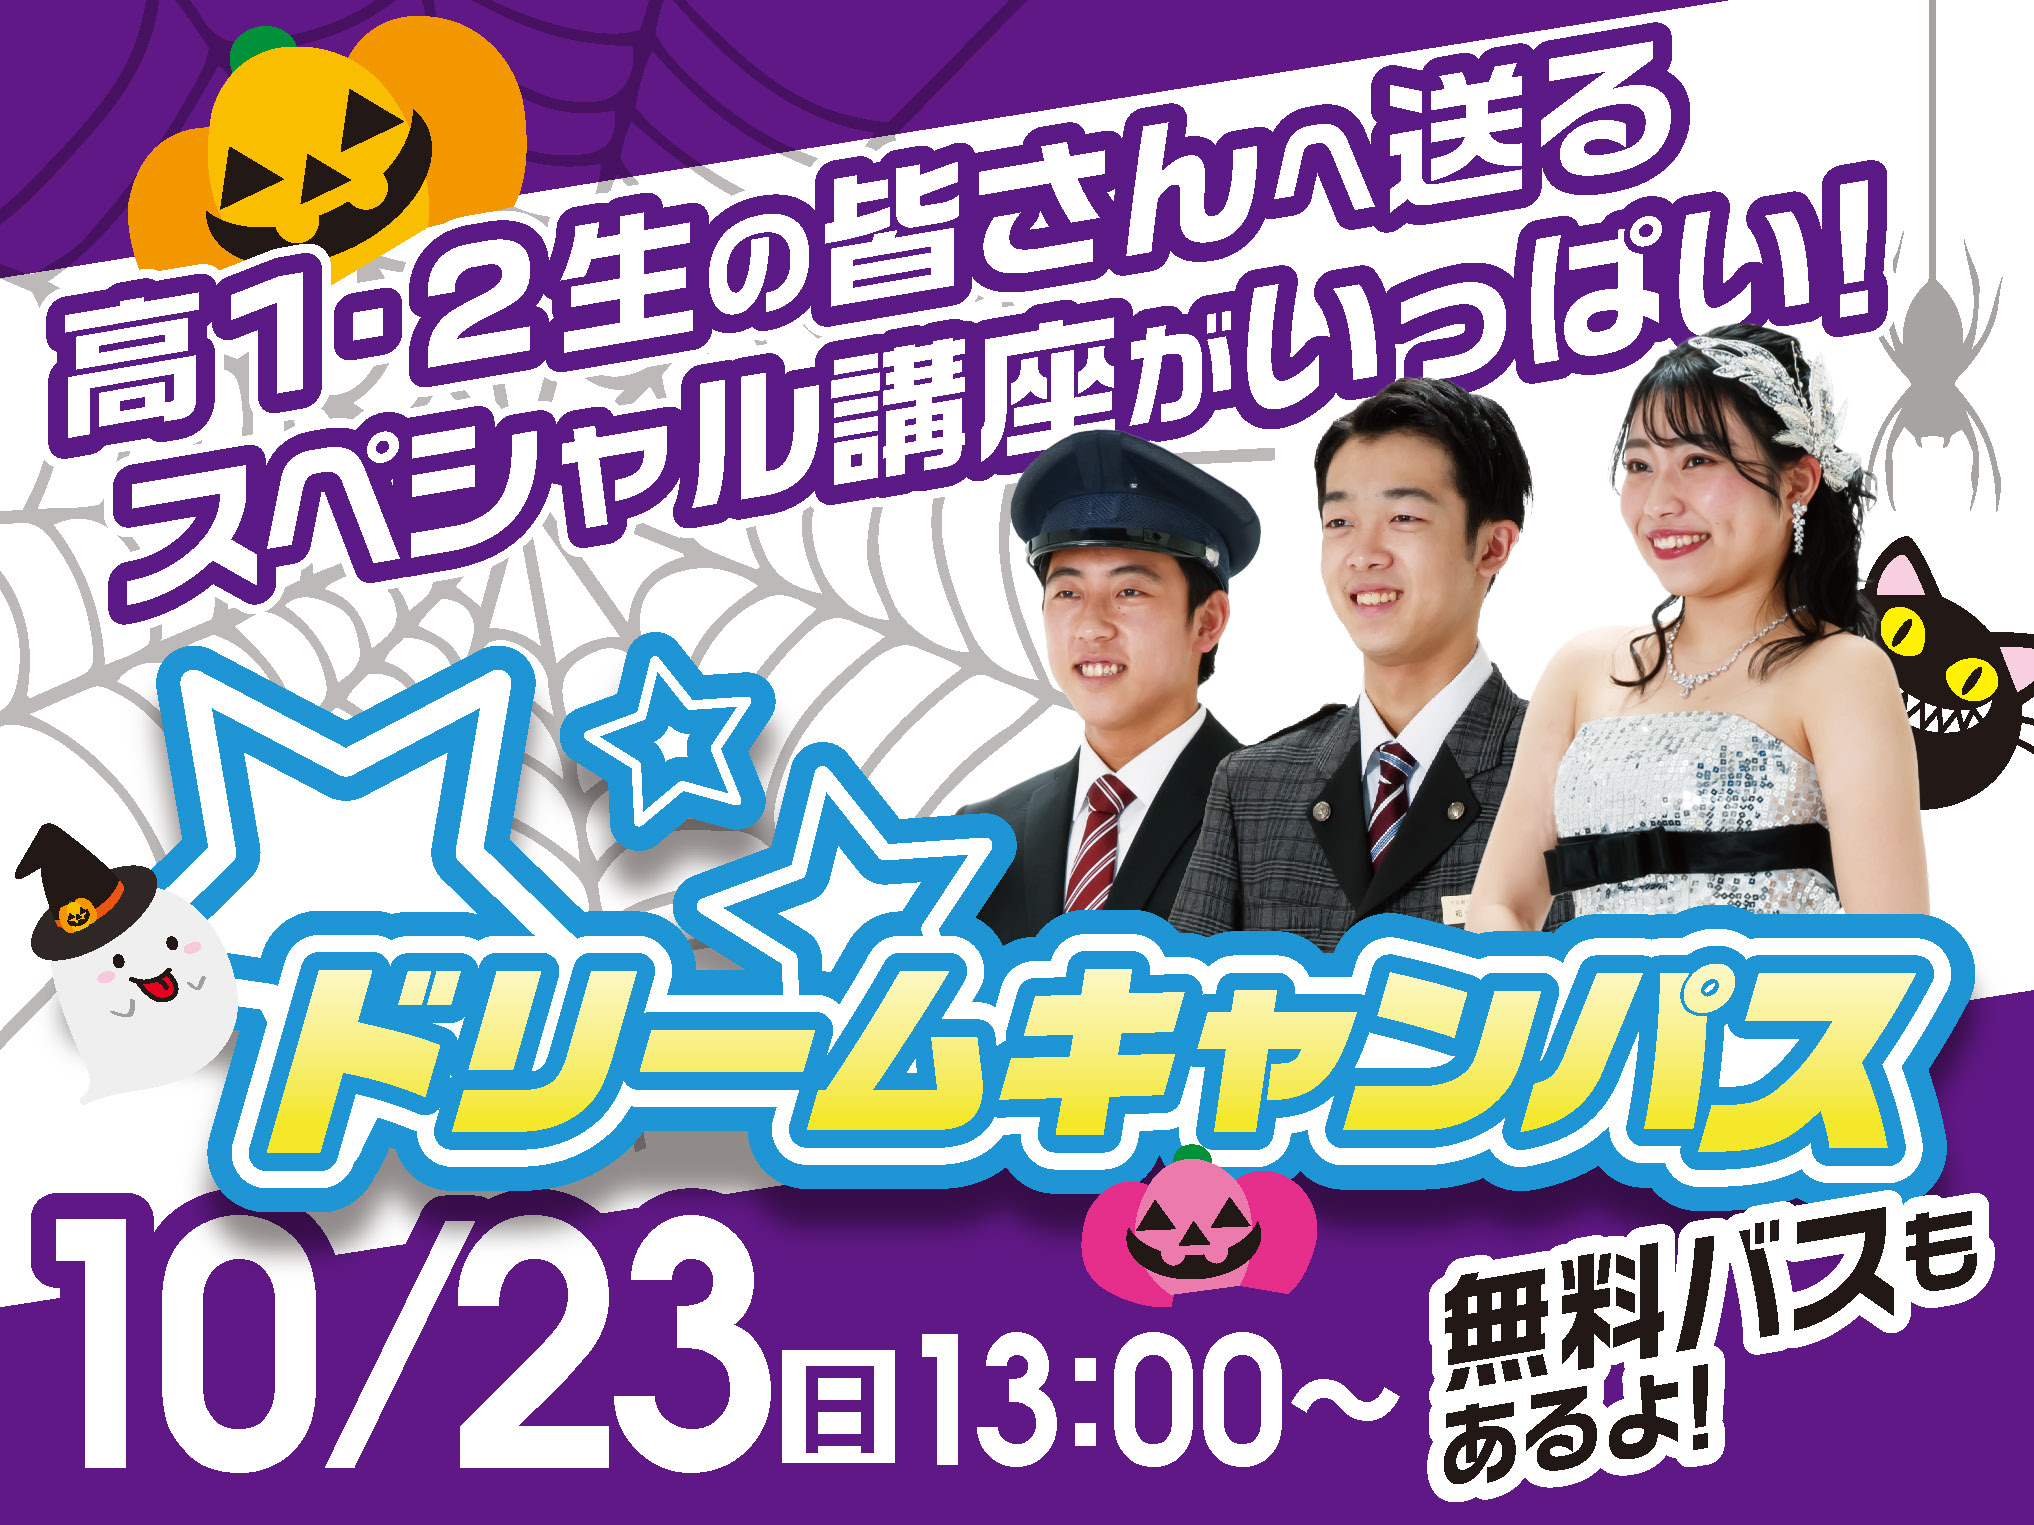 ドリームキャンパス10.23 ハロウィンイベント☆プランニングパーティ